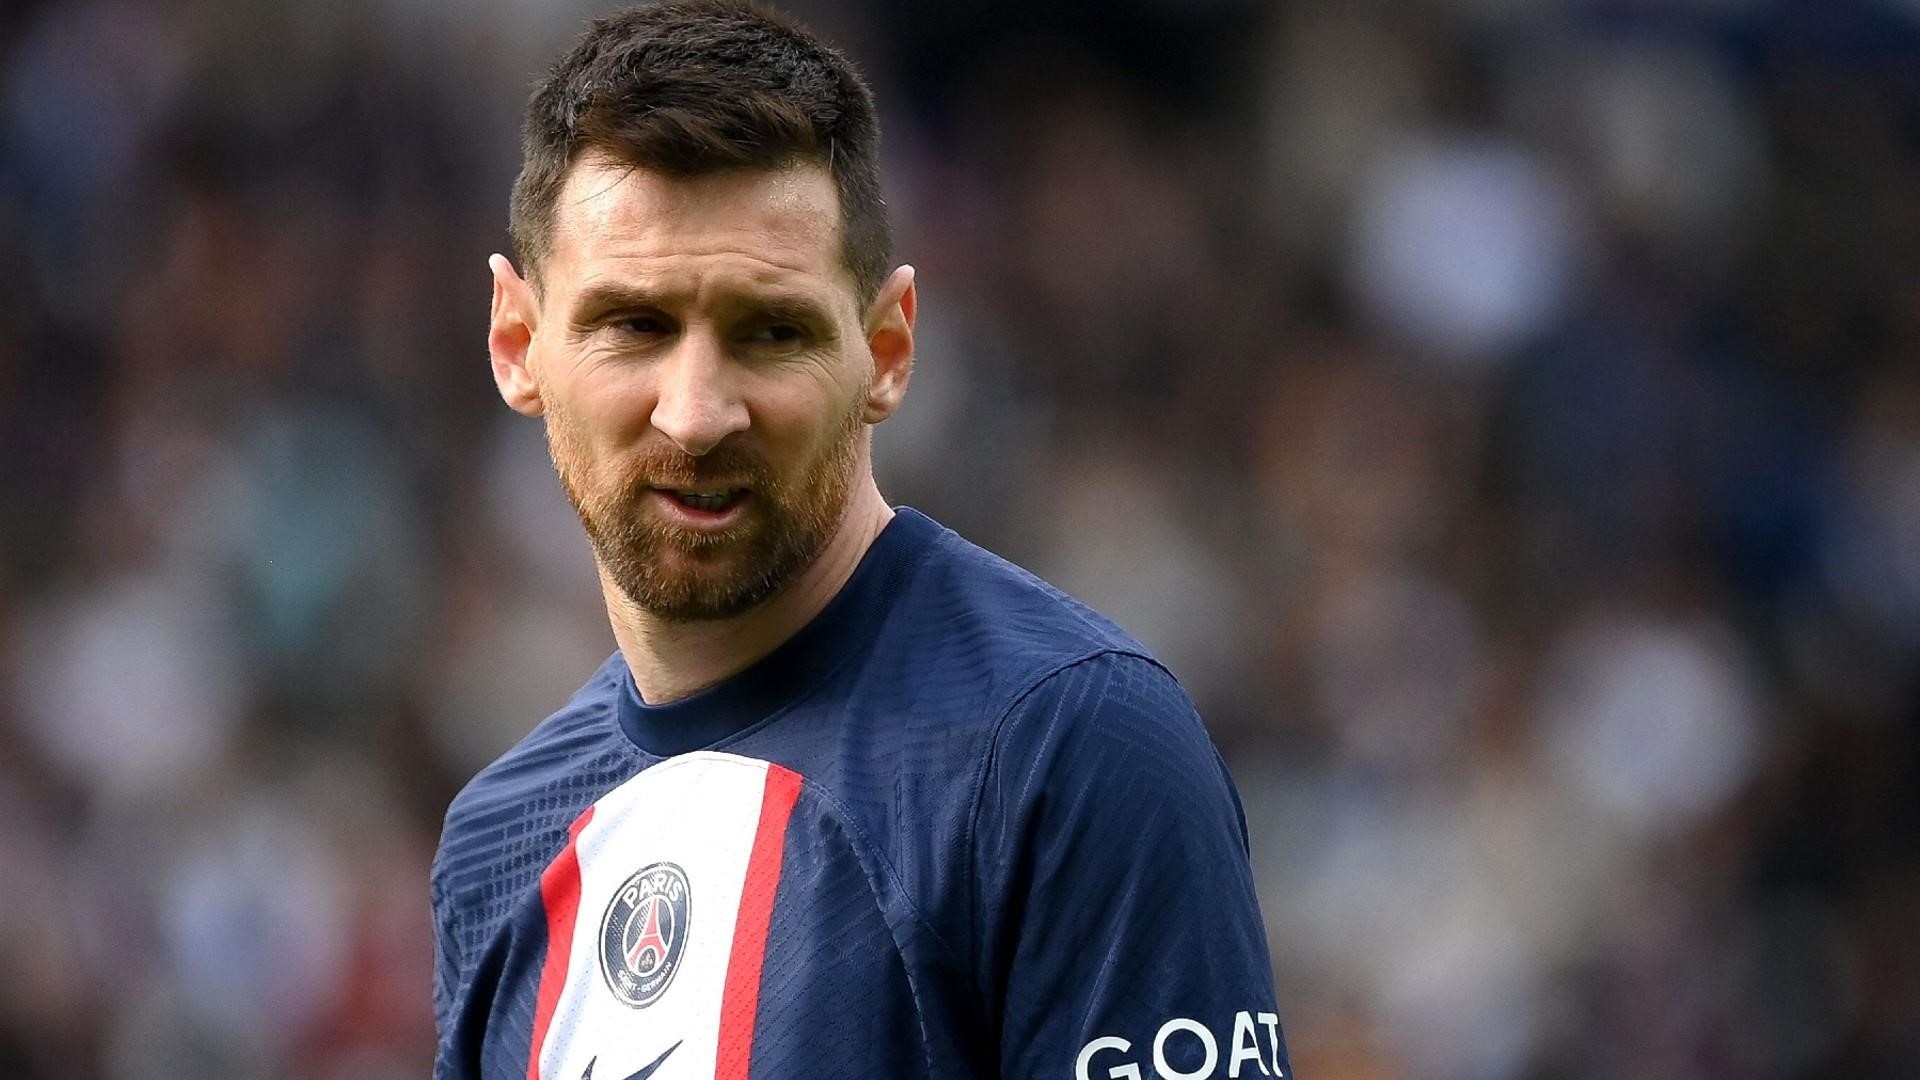 Suspenden a Messi del PSG luego de viaje no autorizado a Arabia Saudita